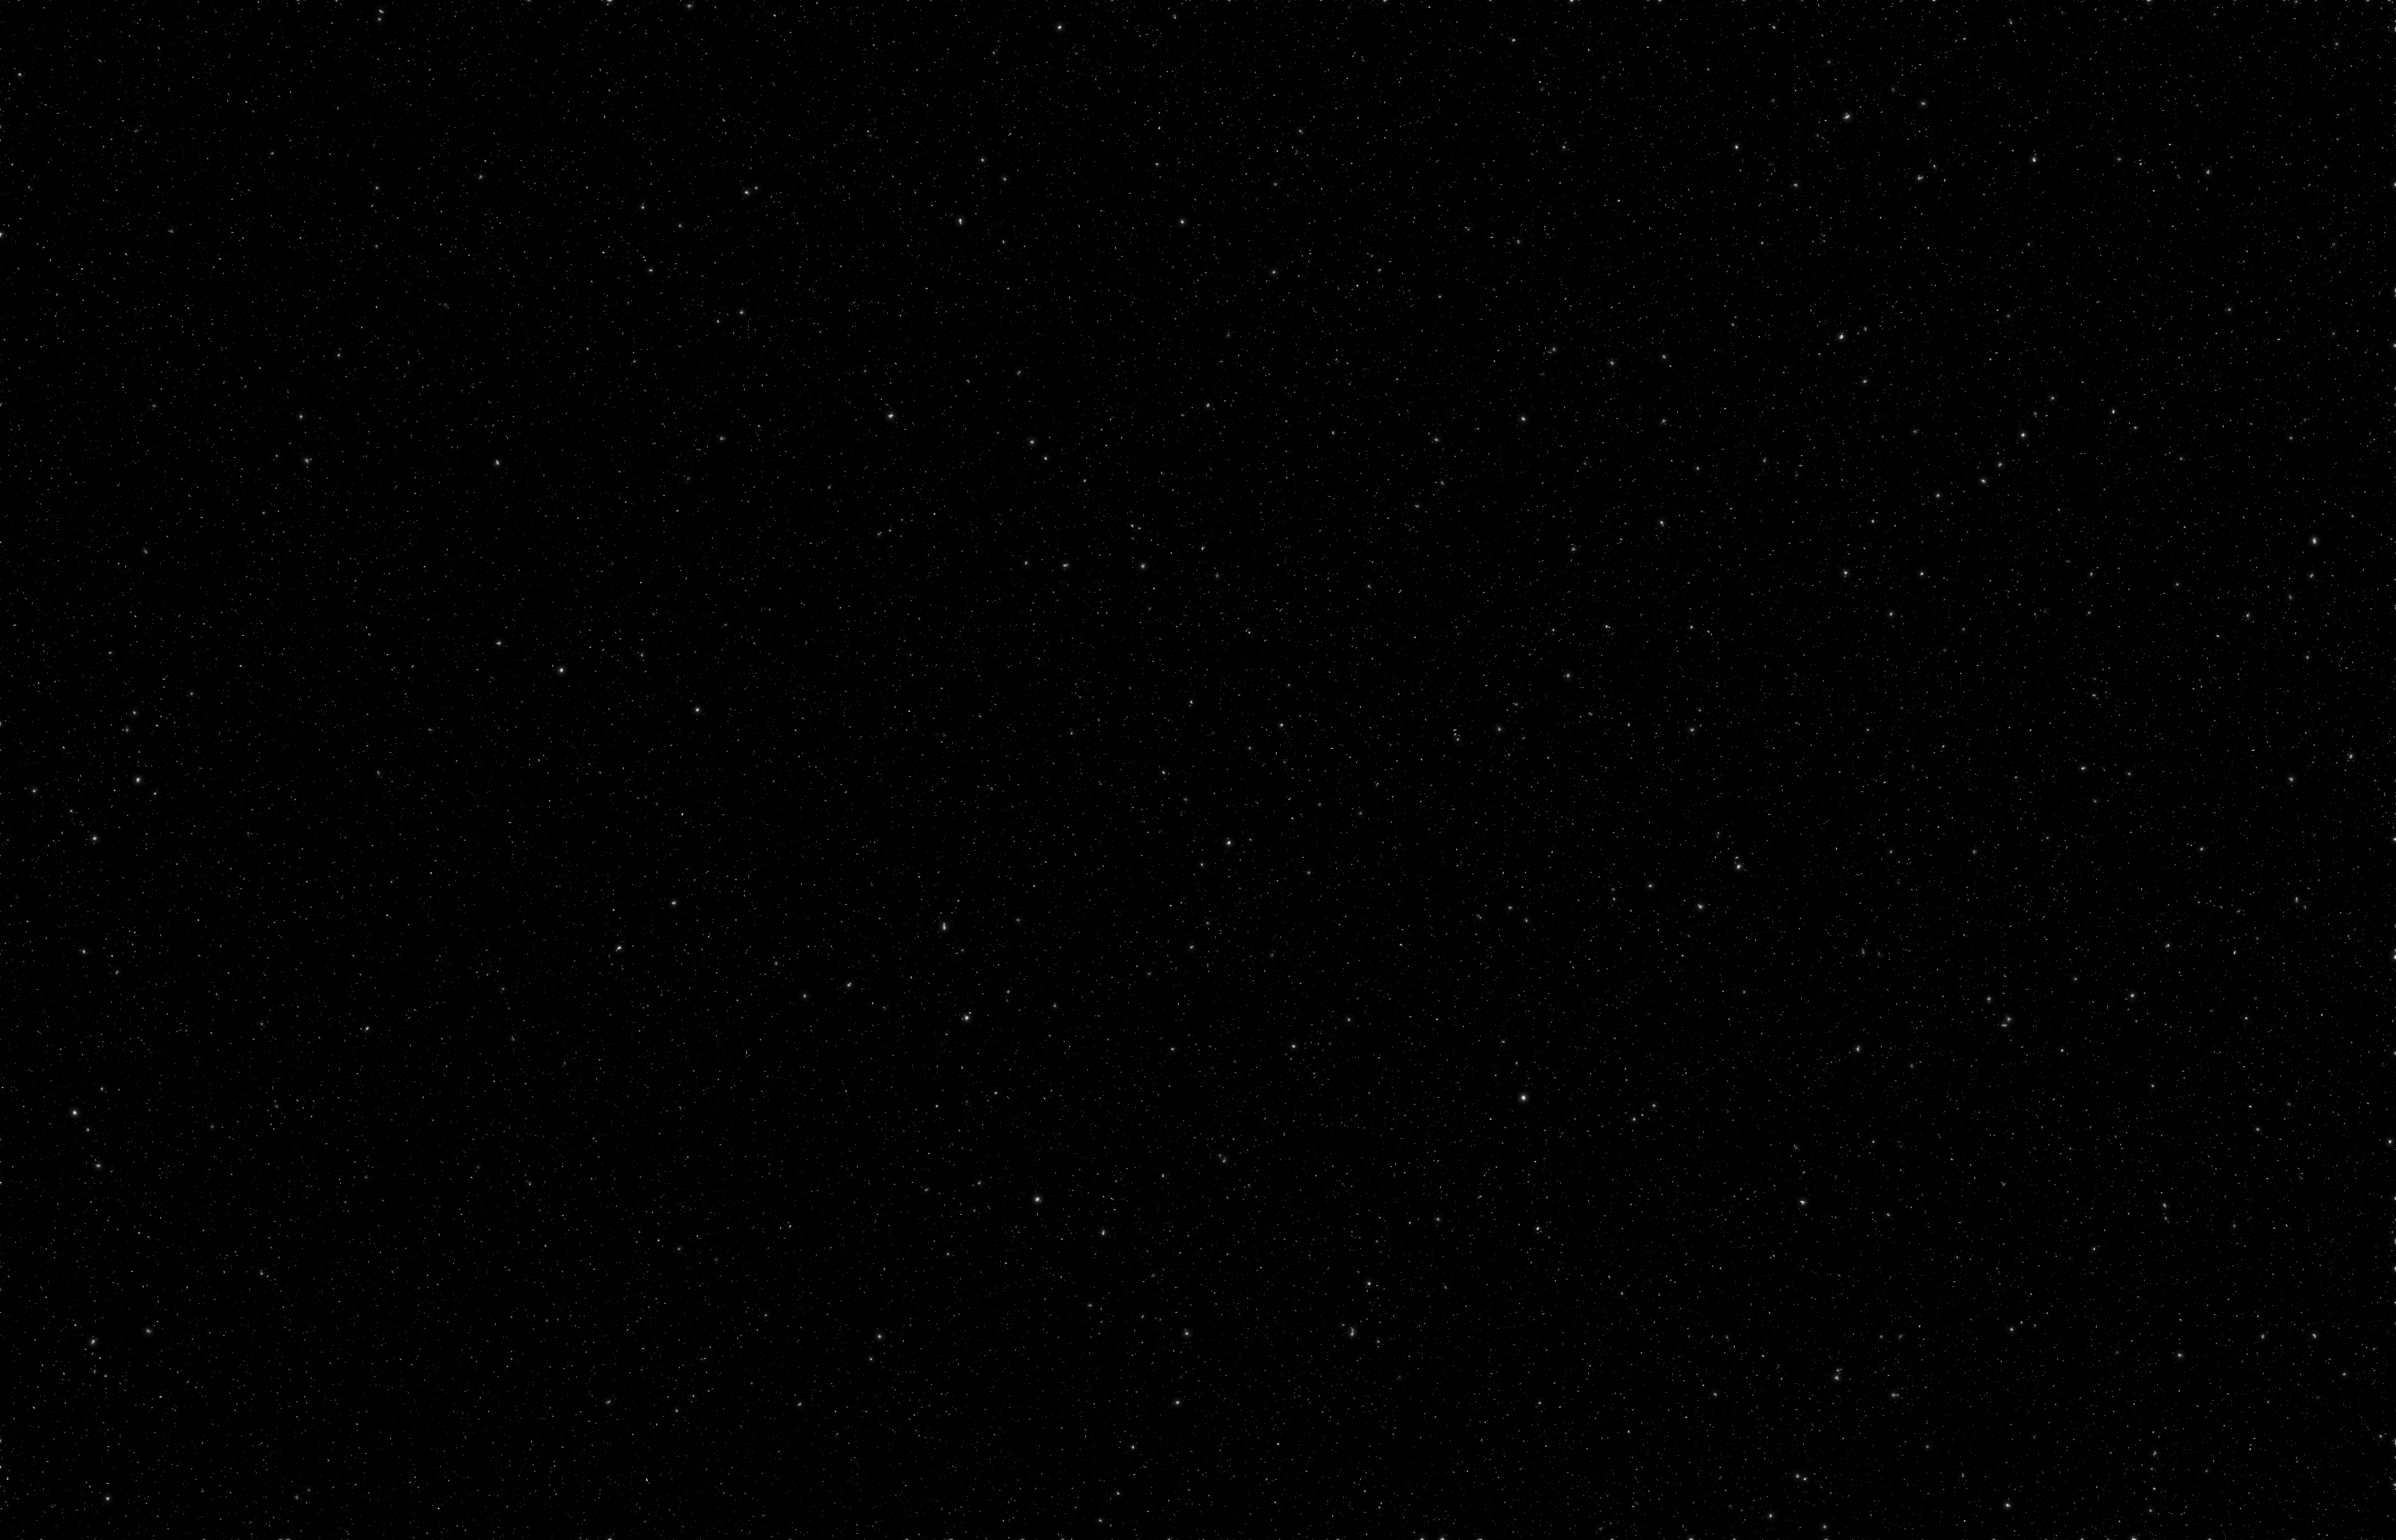 Download wallpaper  3500x2250 sky stars night dark  